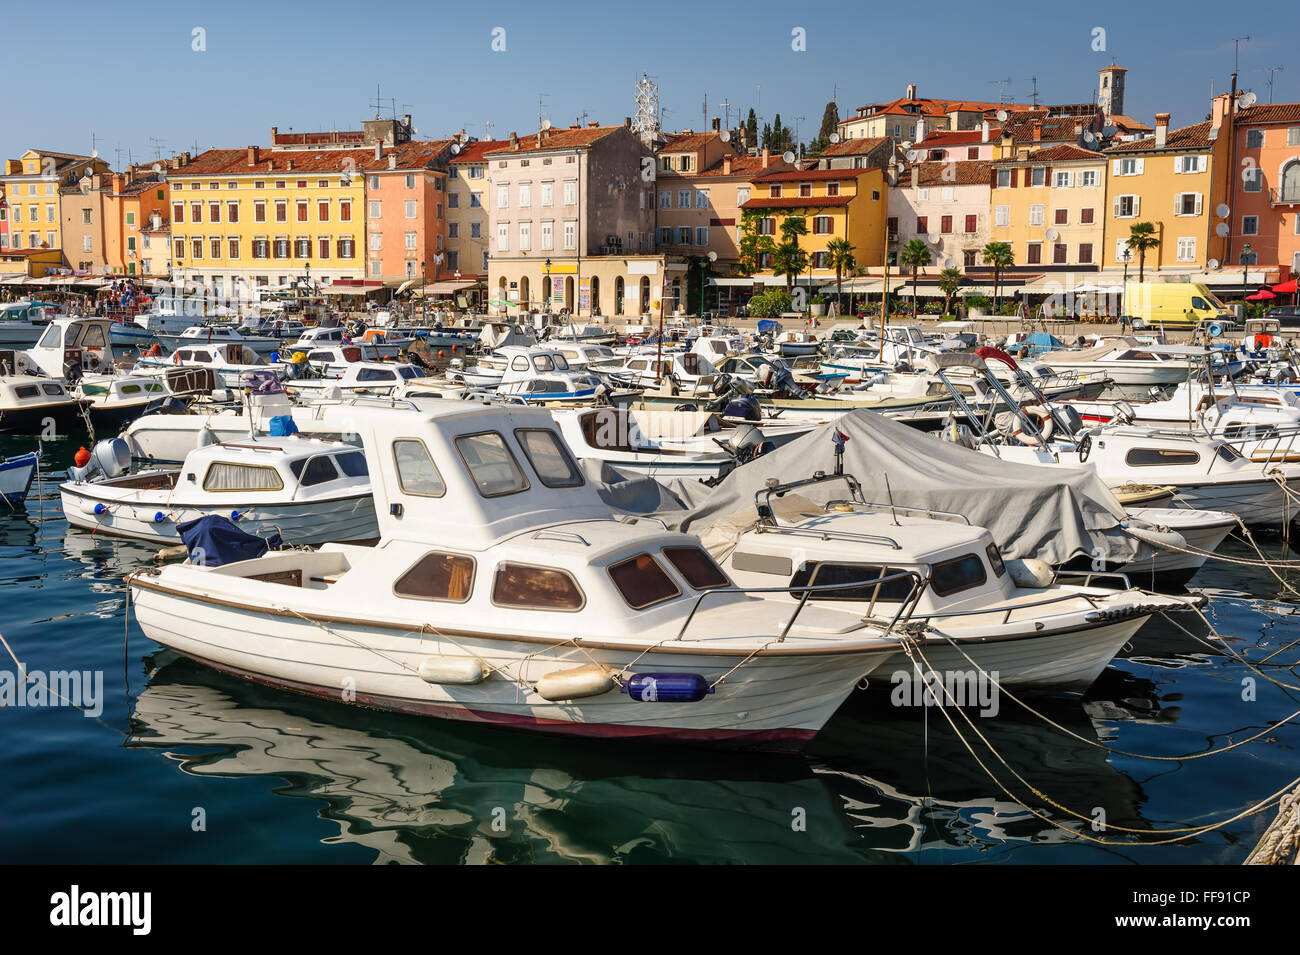 Puerto deportivo de la ciudad de Rovinj, Croacia Foto de stock